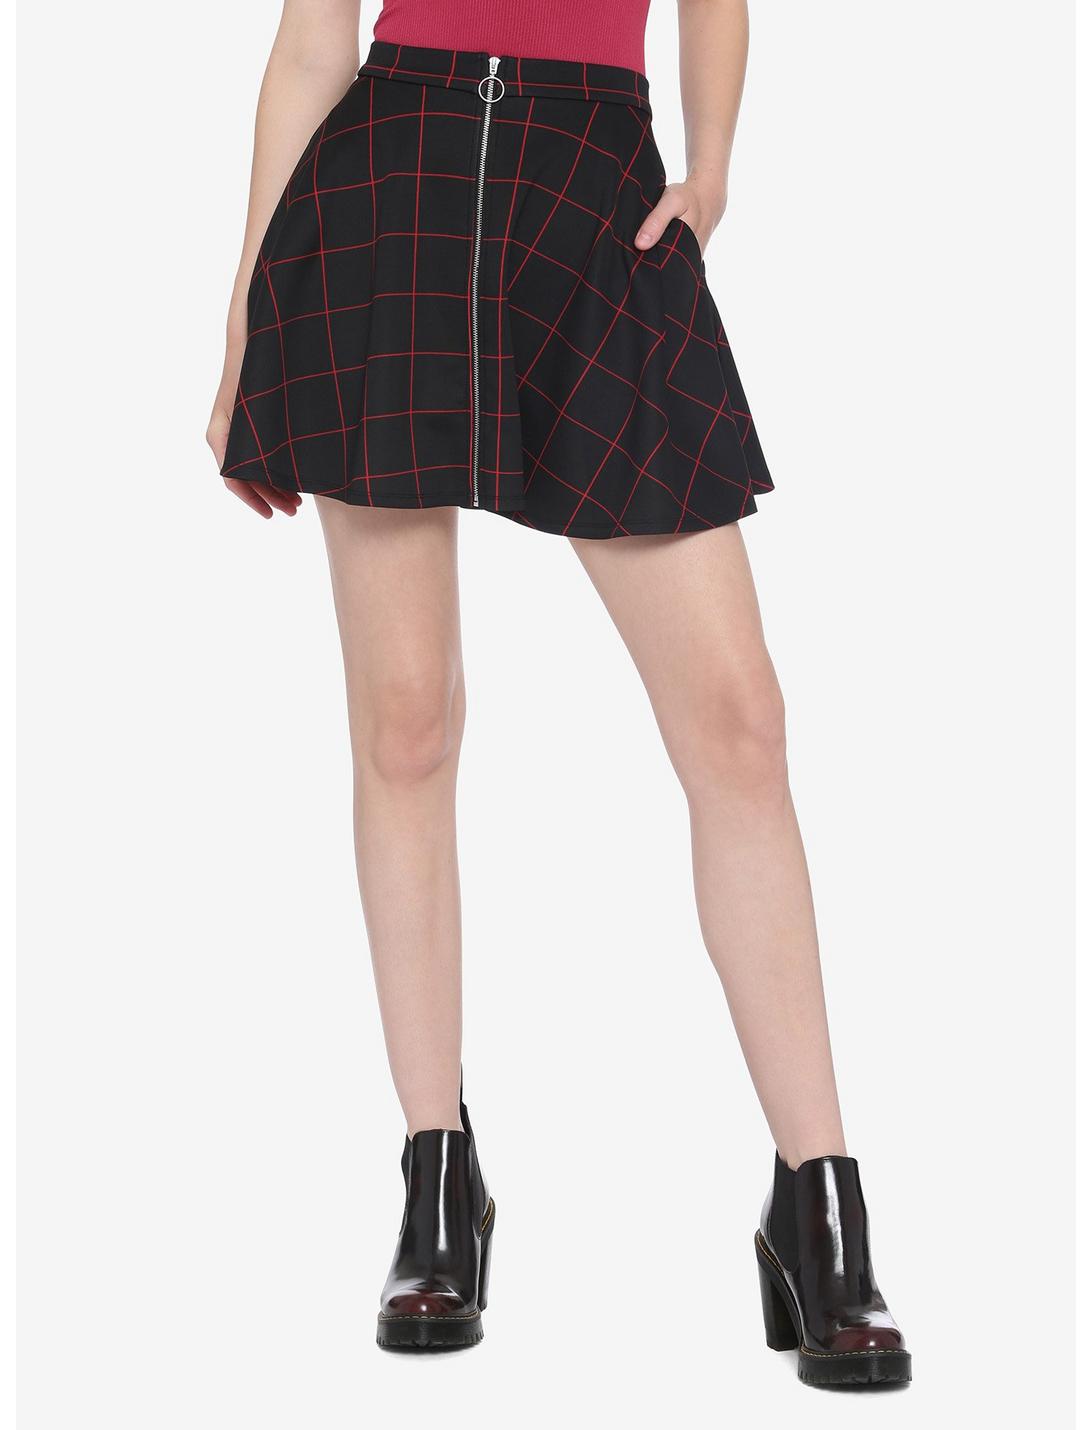 Black & Red Grid O-Ring Skater Skirt, PLAID - RED, hi-res